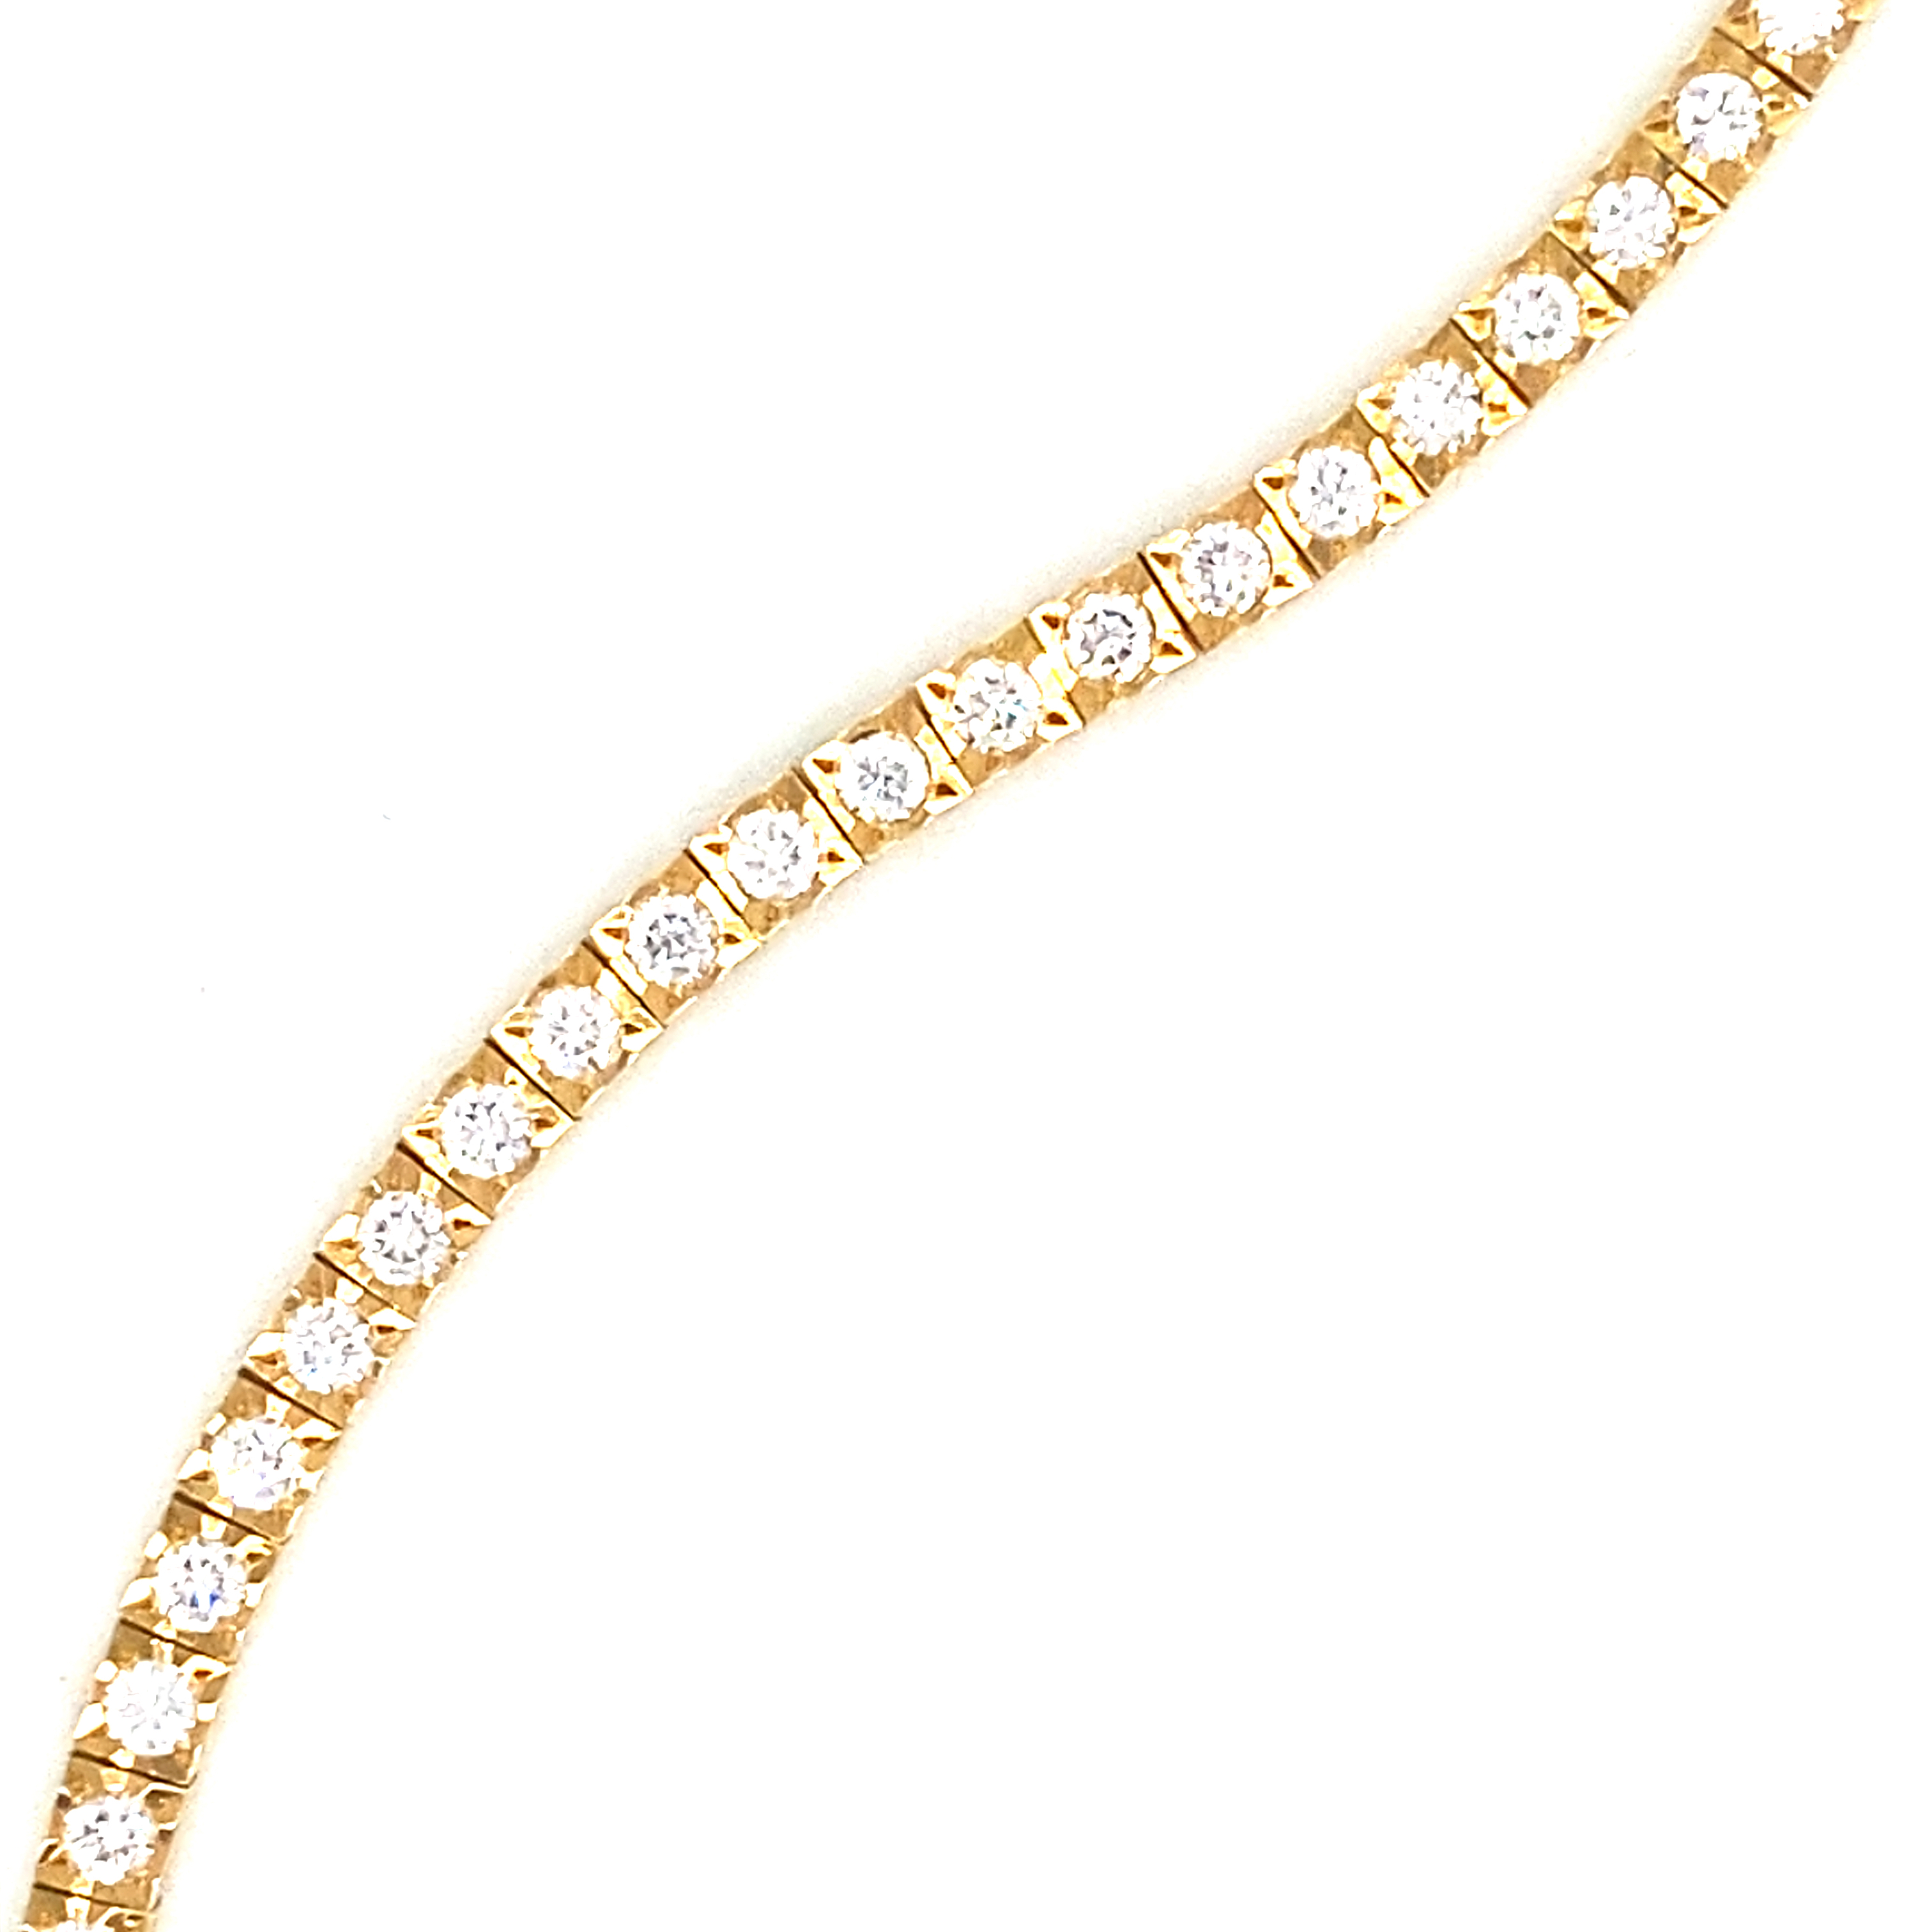 18 Carat Yellow Gold and Diamond Line Bracelet 2.00 Carats